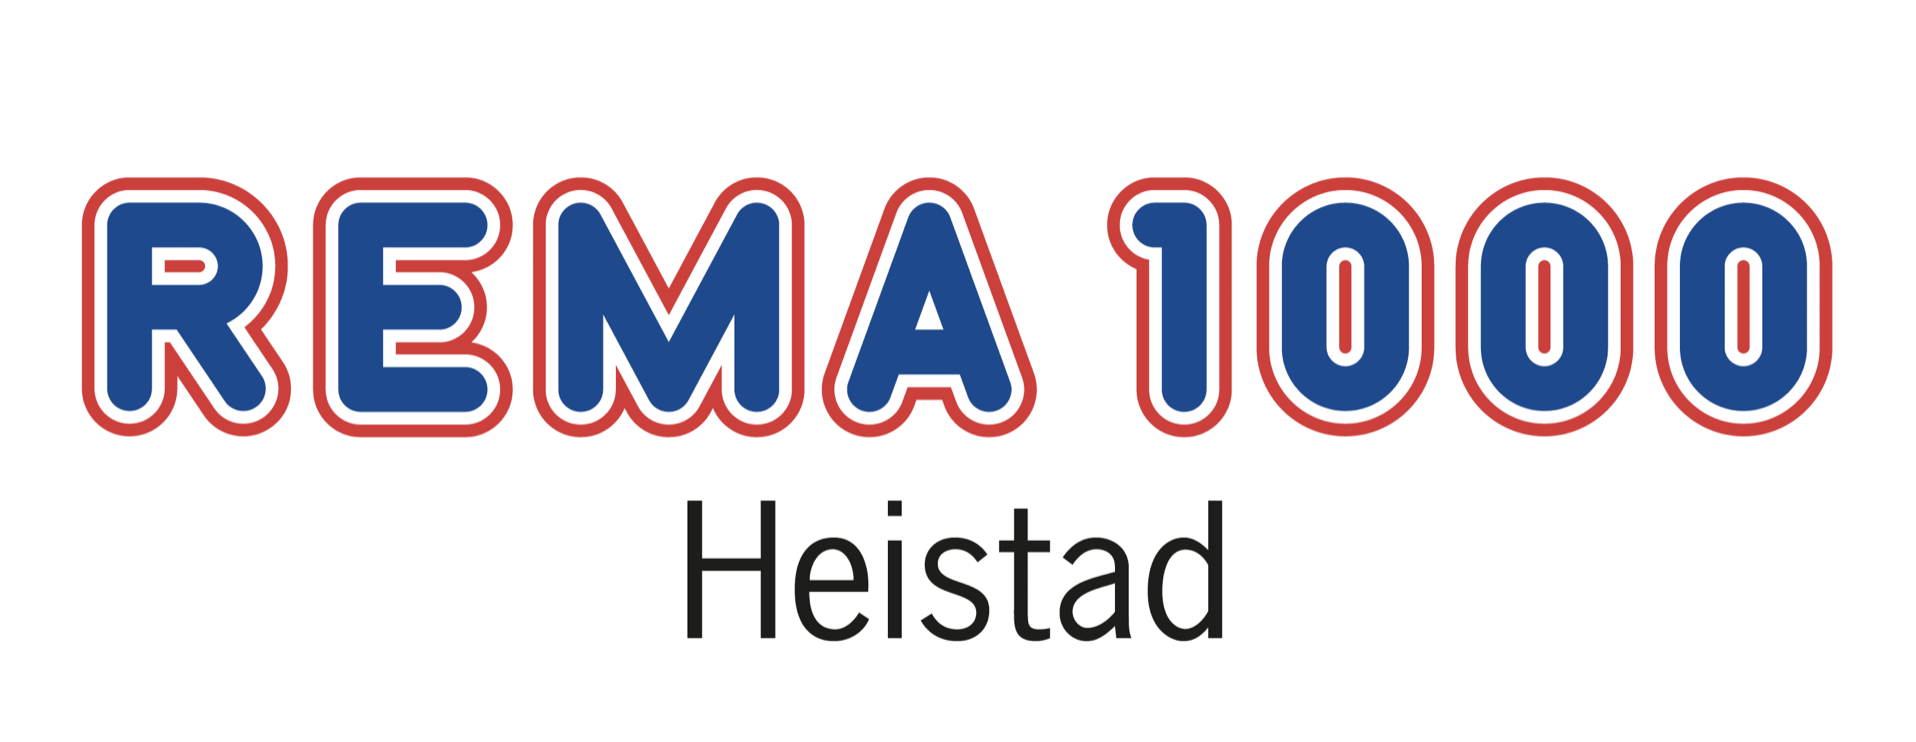 Rema 1000 Heistad